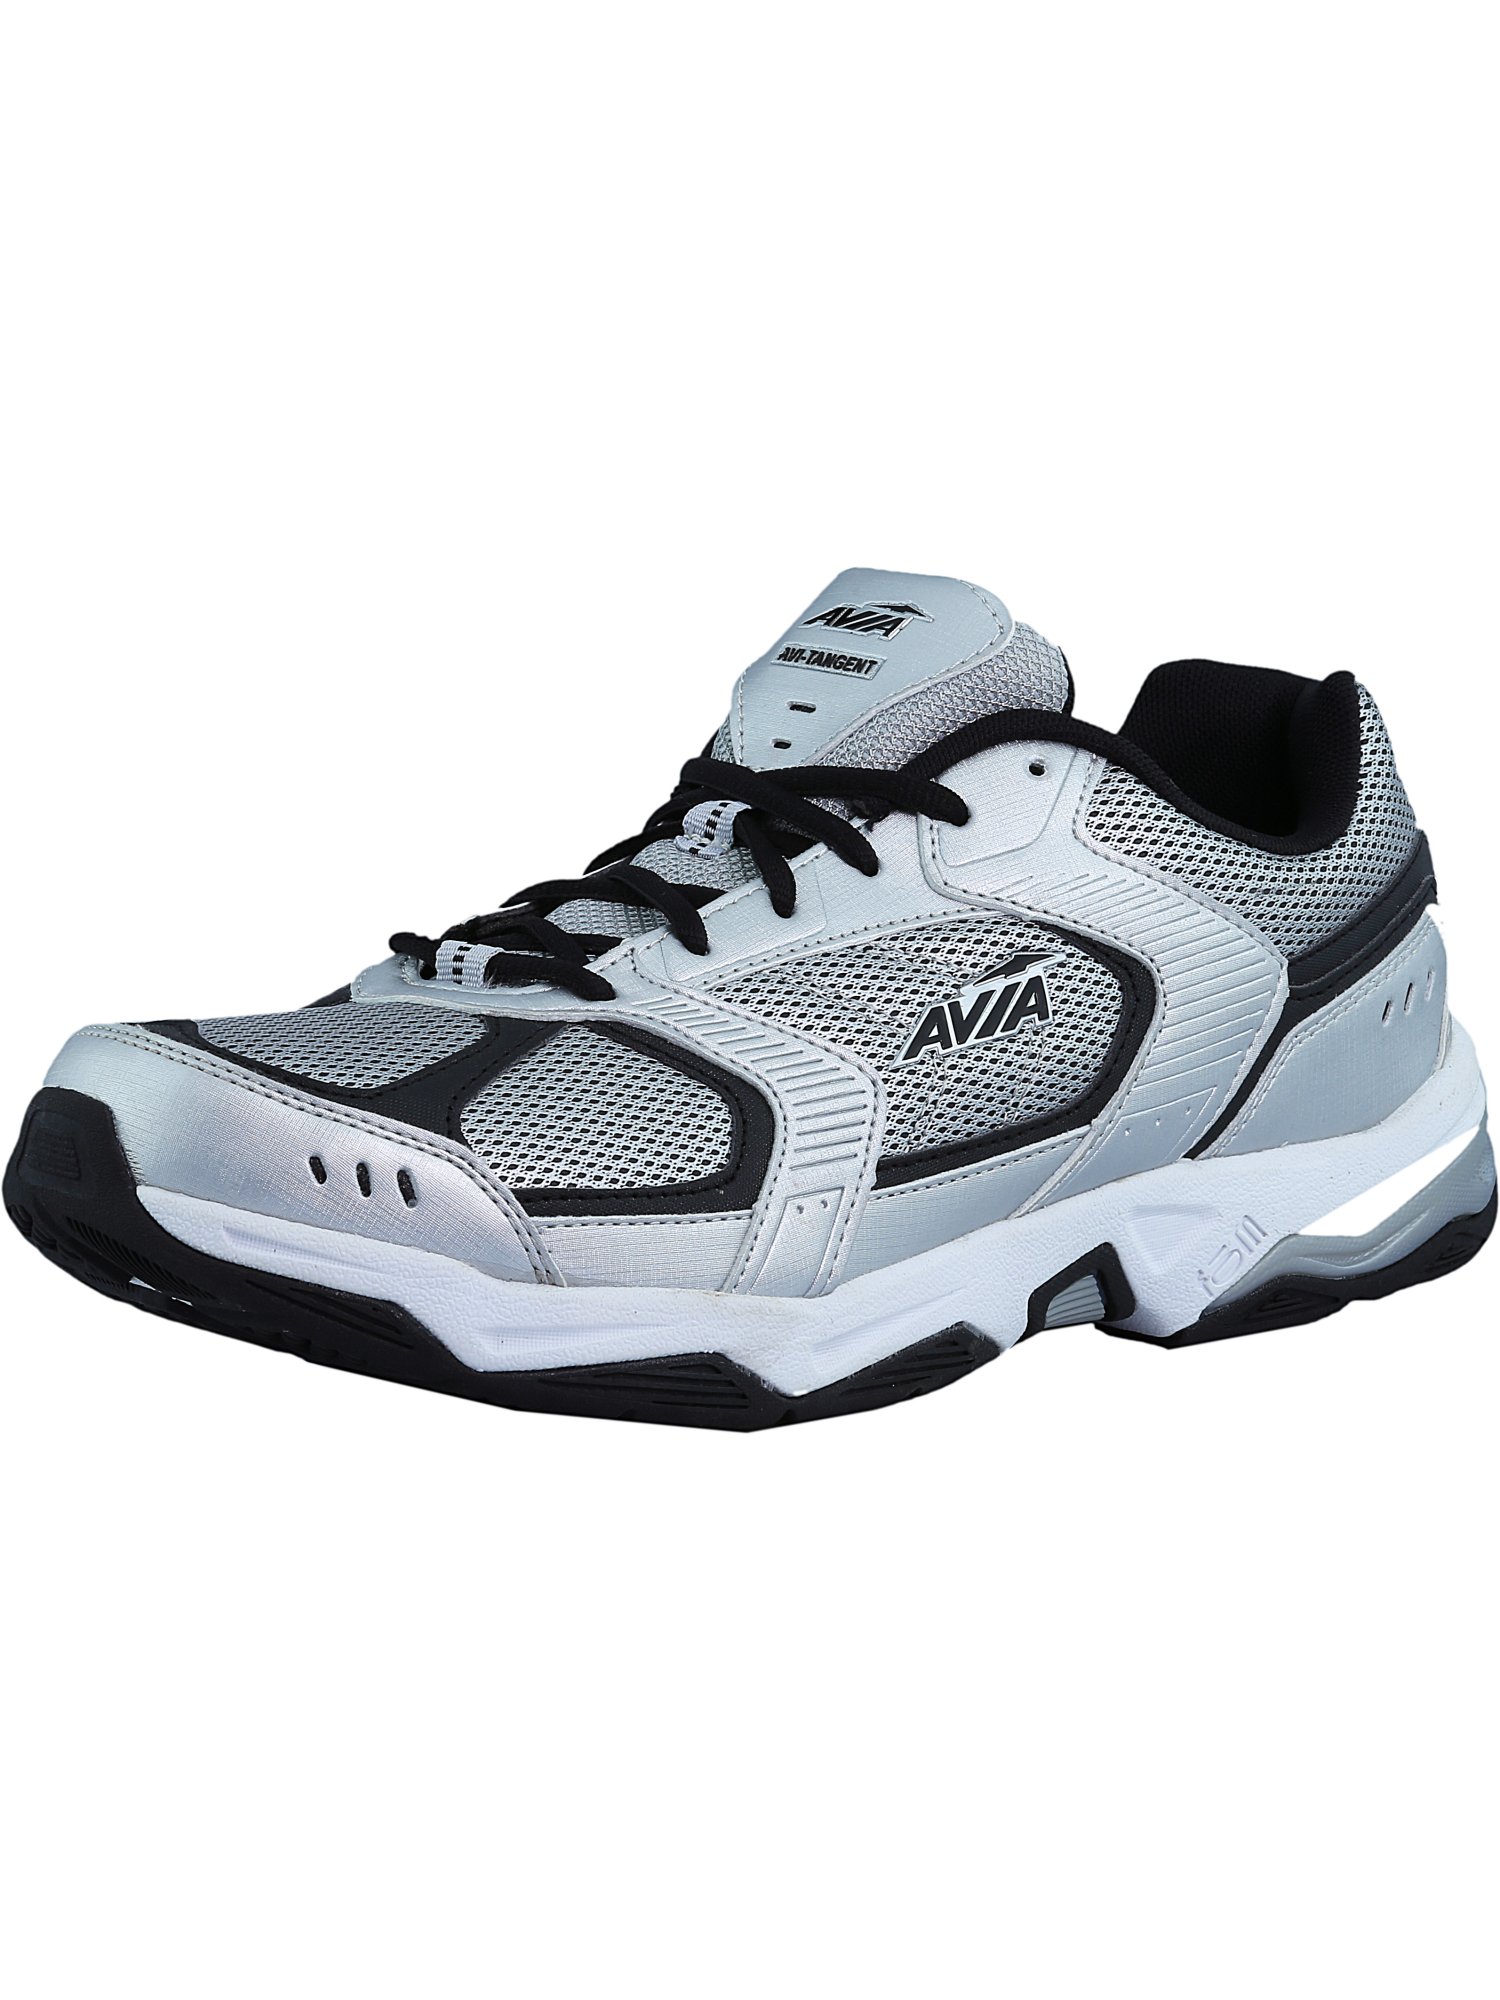 Avia Men's Avi-Tangent Ankle-High Running Shoe | eBay